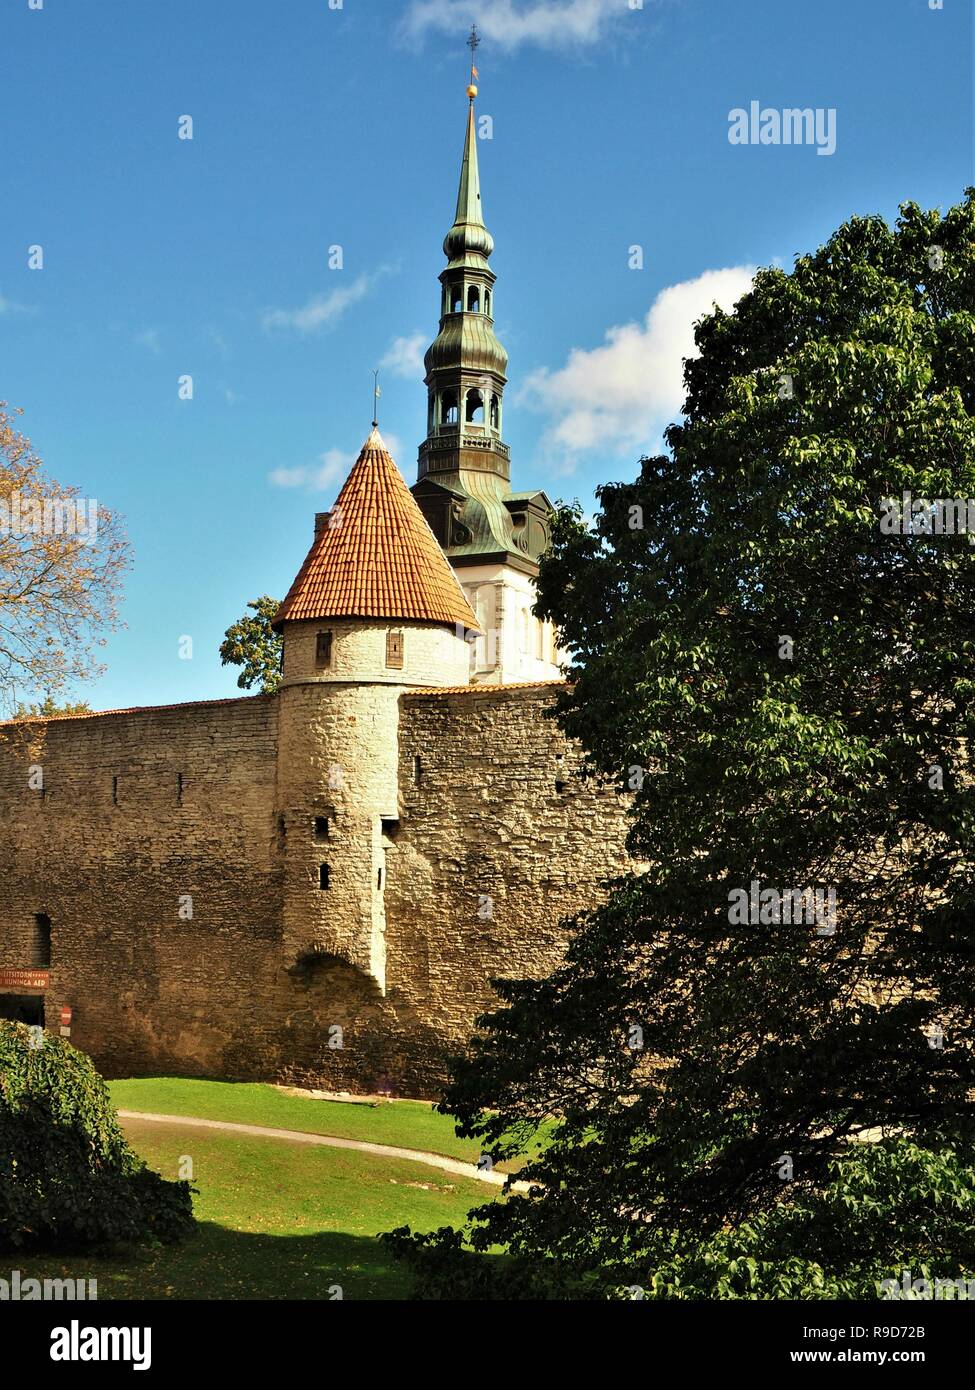 La ville médiévale et la tour de l'église St Nicholas à Tallinn, Estonie Banque D'Images